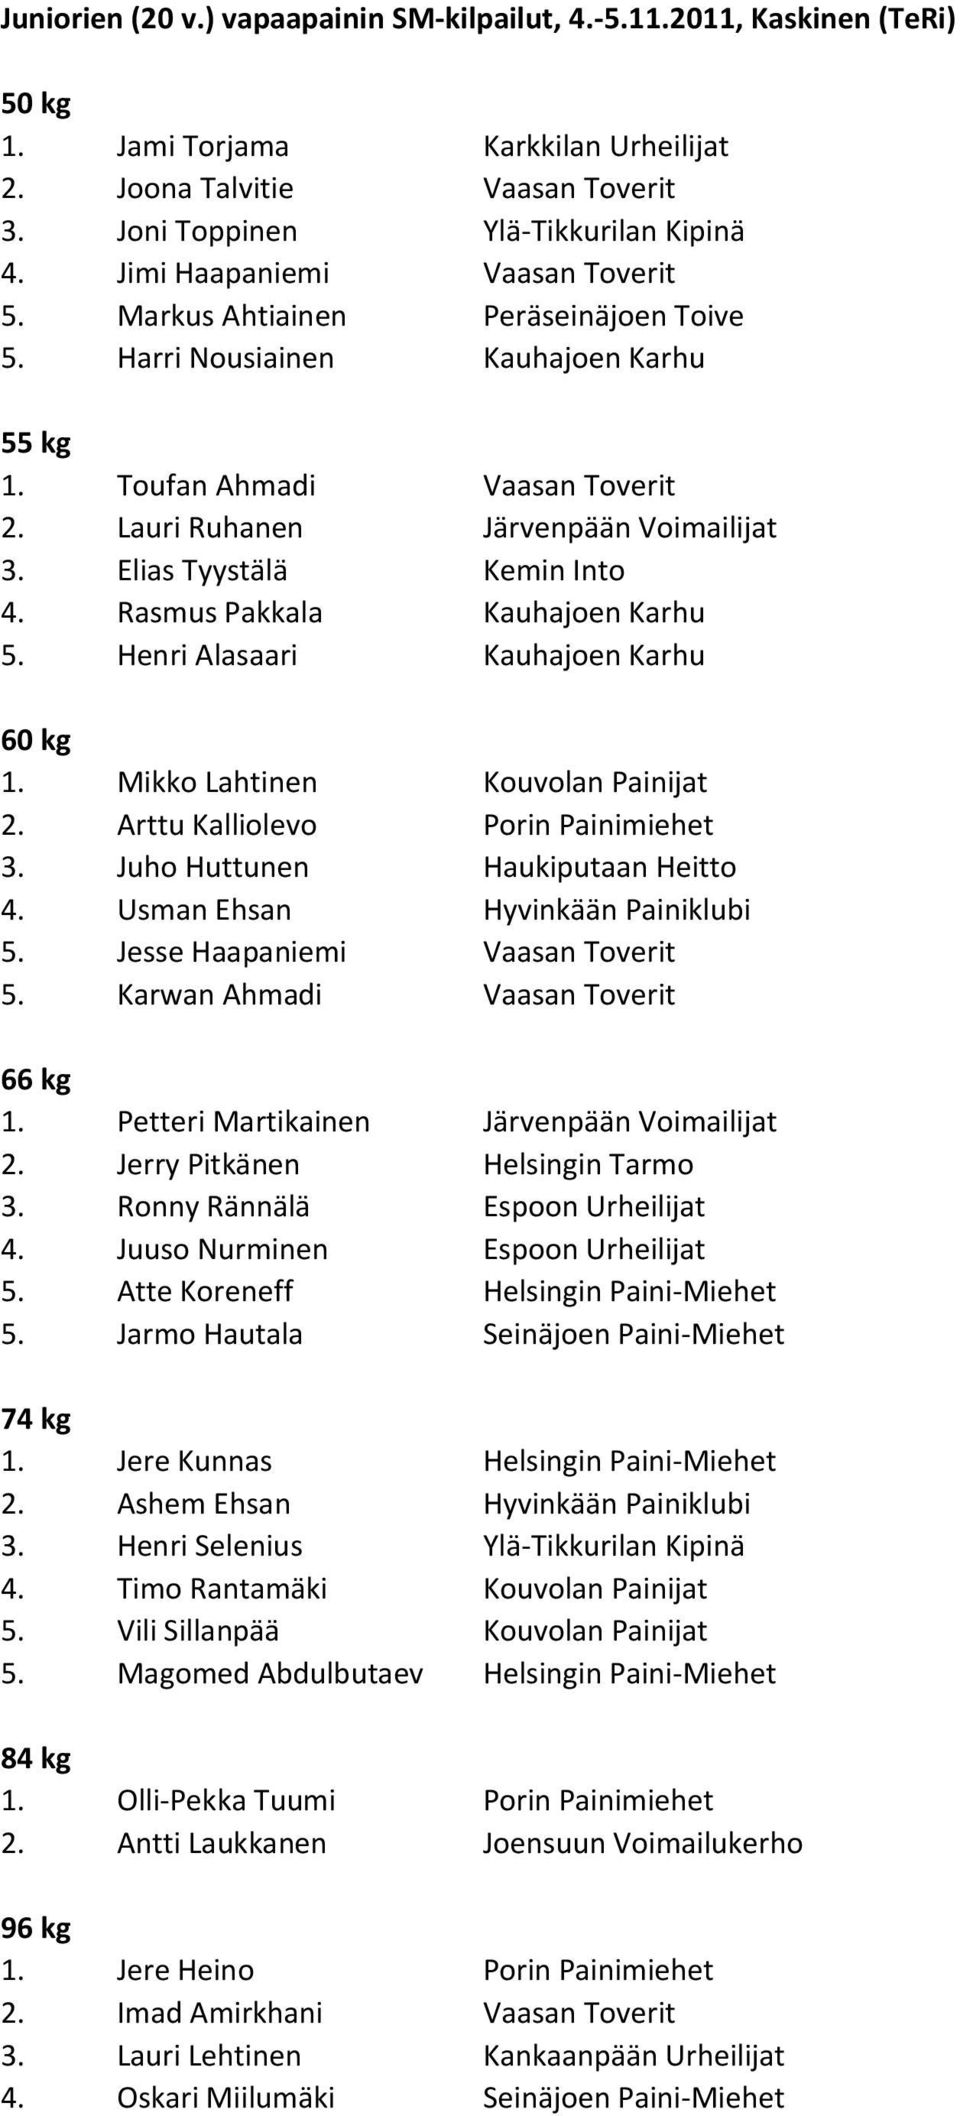 Elias Tyystälä Kemin Into 4. Rasmus Pakkala Kauhajoen Karhu 5. Henri Alasaari Kauhajoen Karhu 1. Mikko Lahtinen Kouvolan Painijat 2. Arttu Kalliolevo Porin Painimiehet 3.